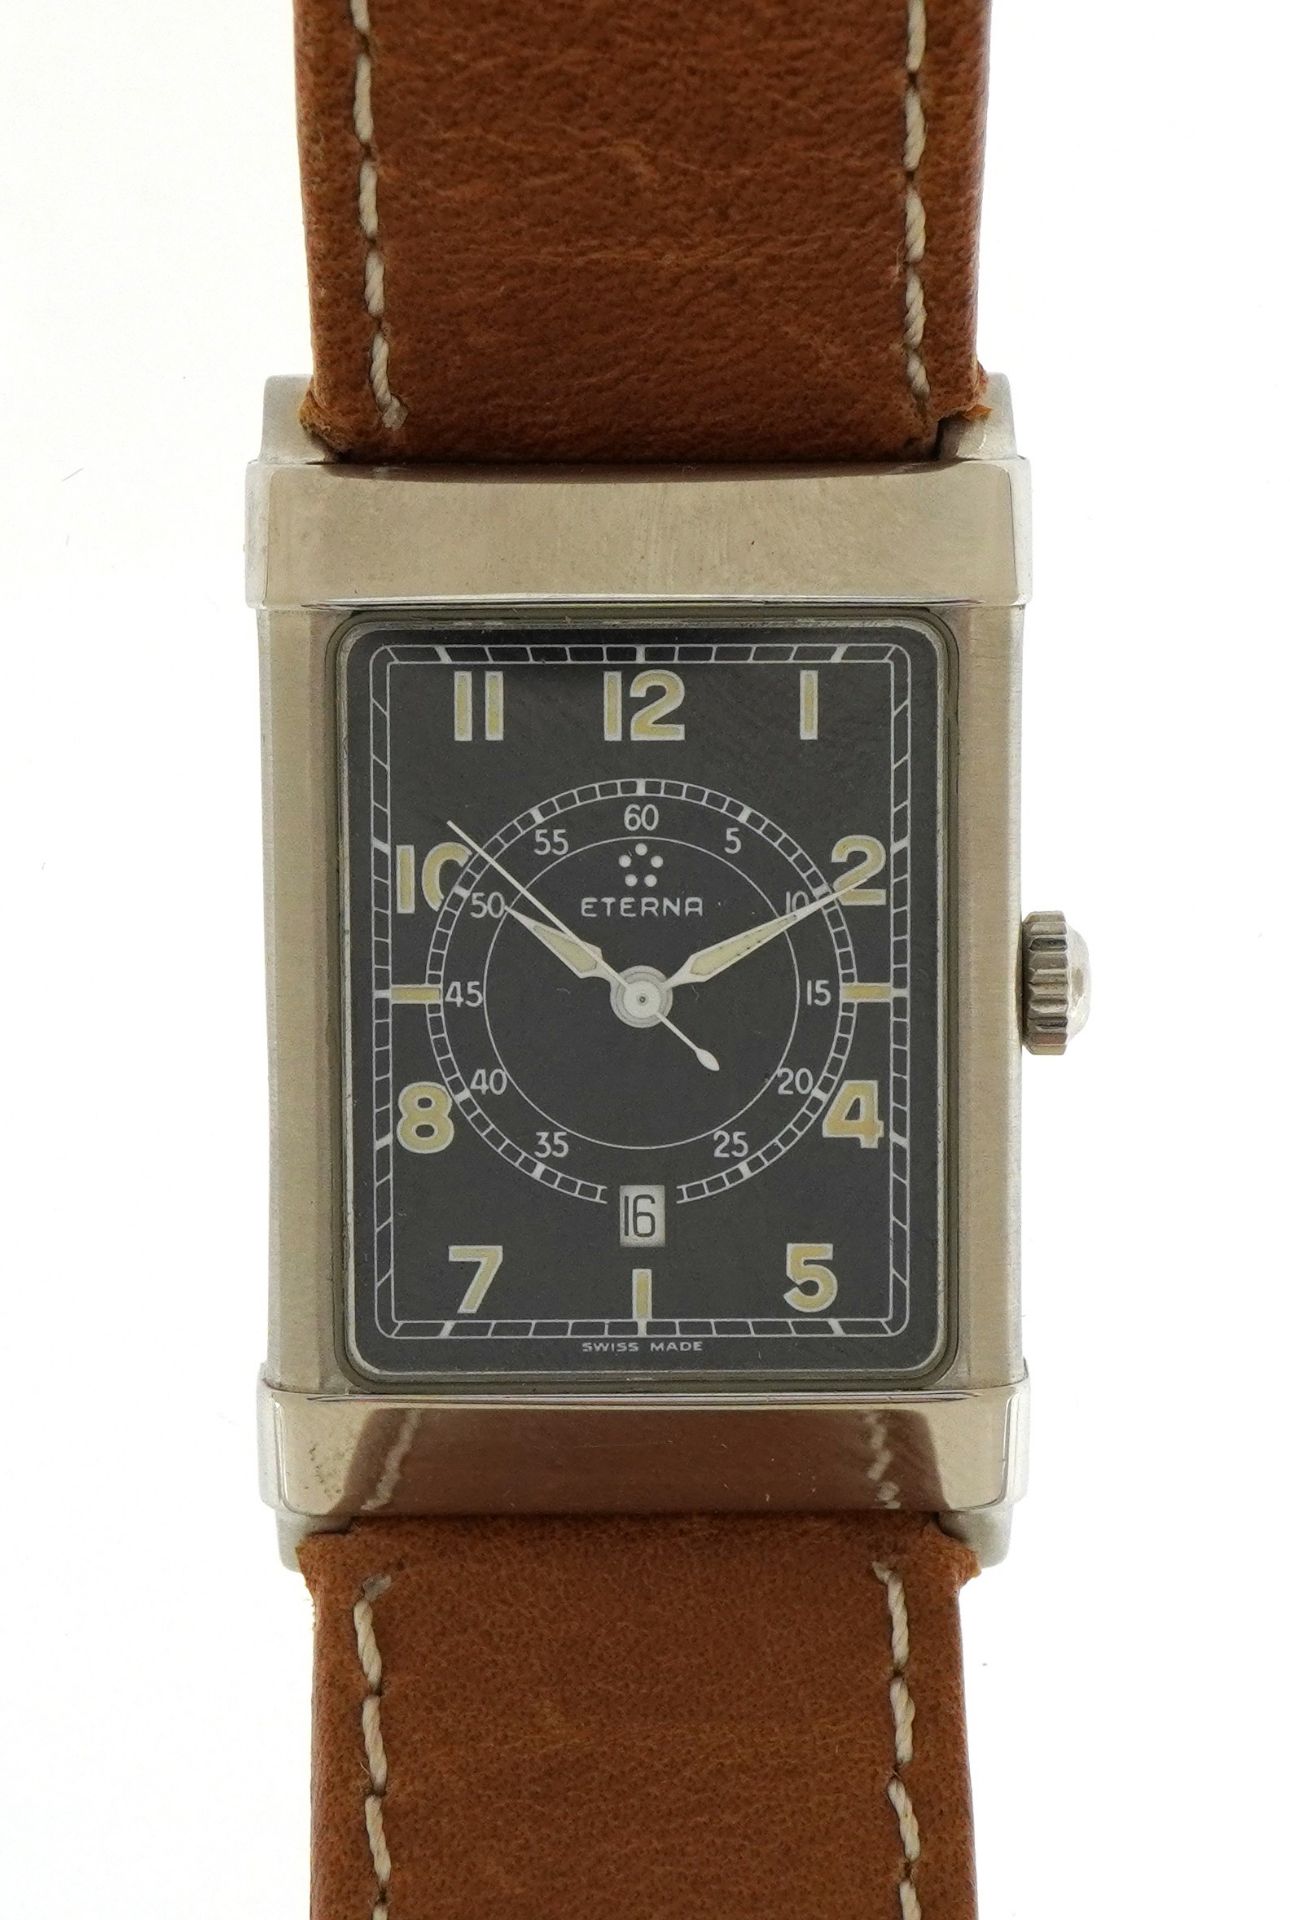 Eterna, gentlemen's Eterna-Matic Les Historiques 1935 gentlemen's wristwatch with date dial, 24mm